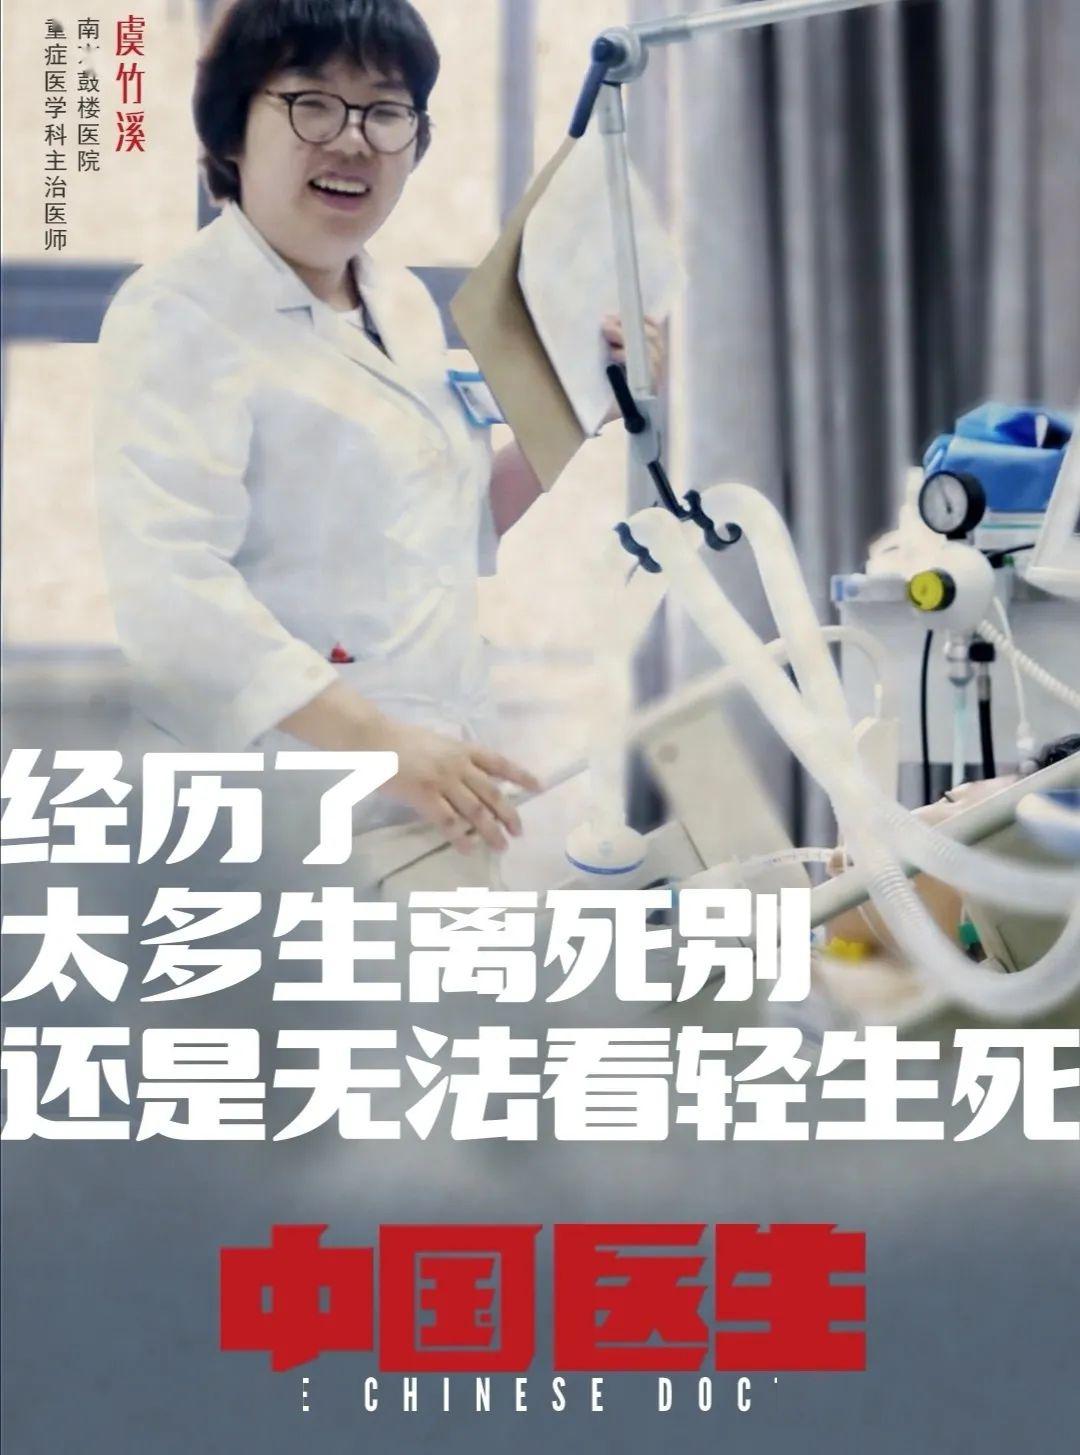 3高分作品纪录片《中国医生》用客观的视角介绍了医护群体里一个个